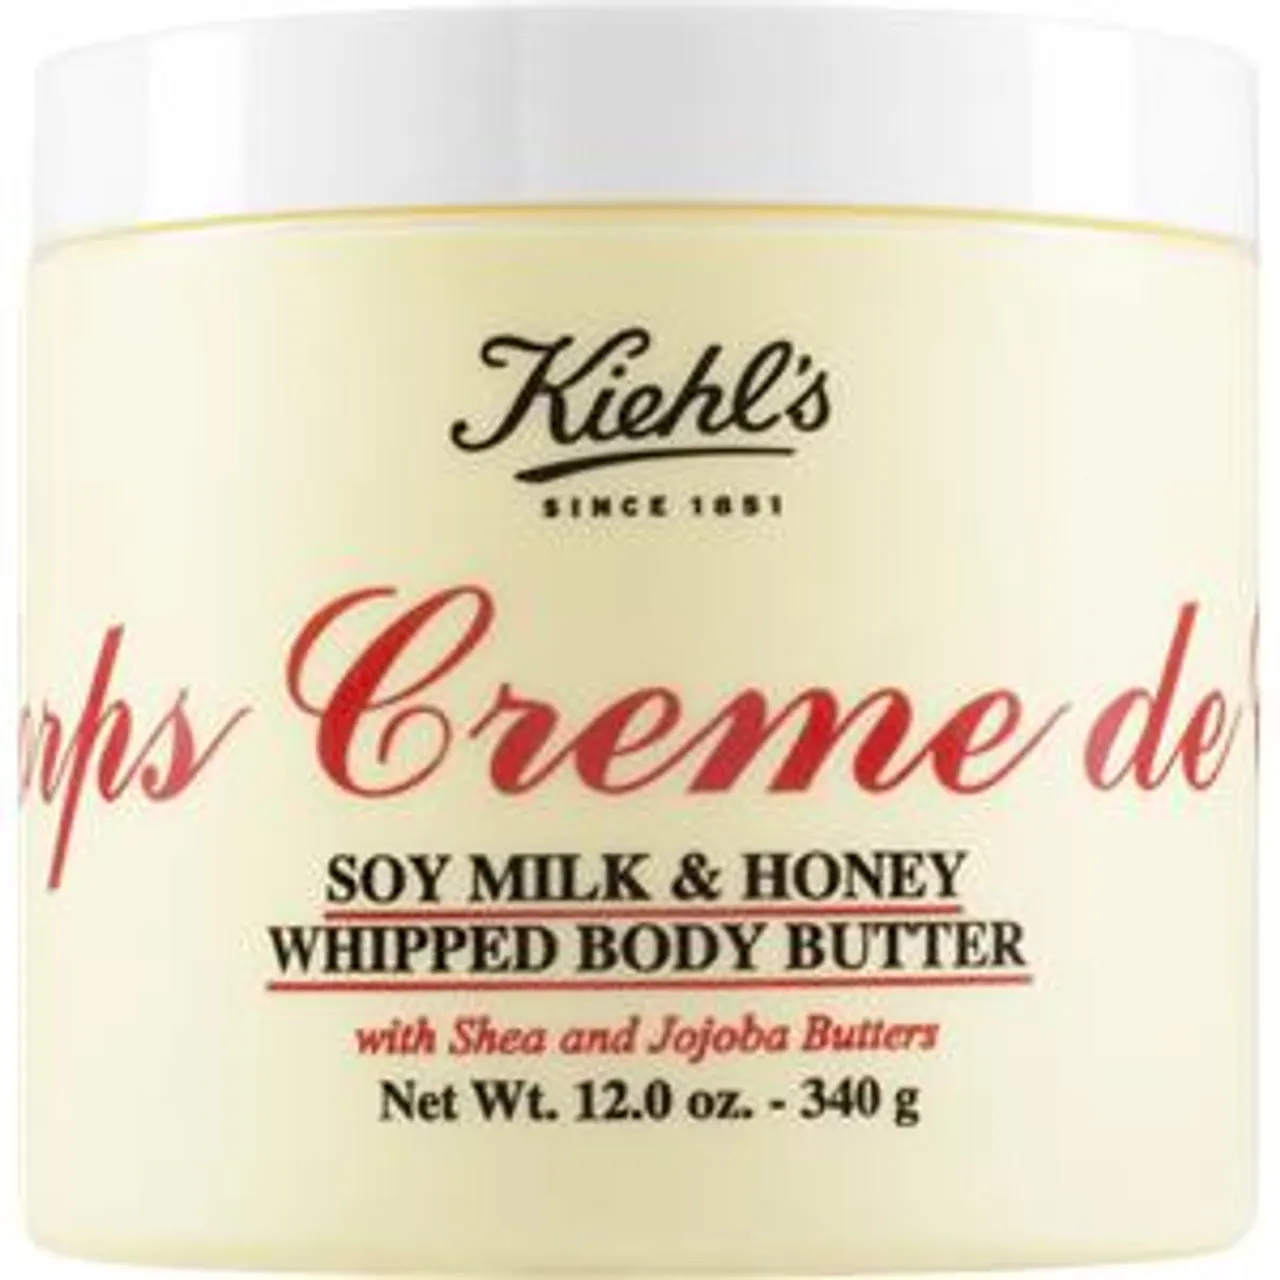 Kiehl's Soy Milk & Honey Whipped Body Butter 2 226 g